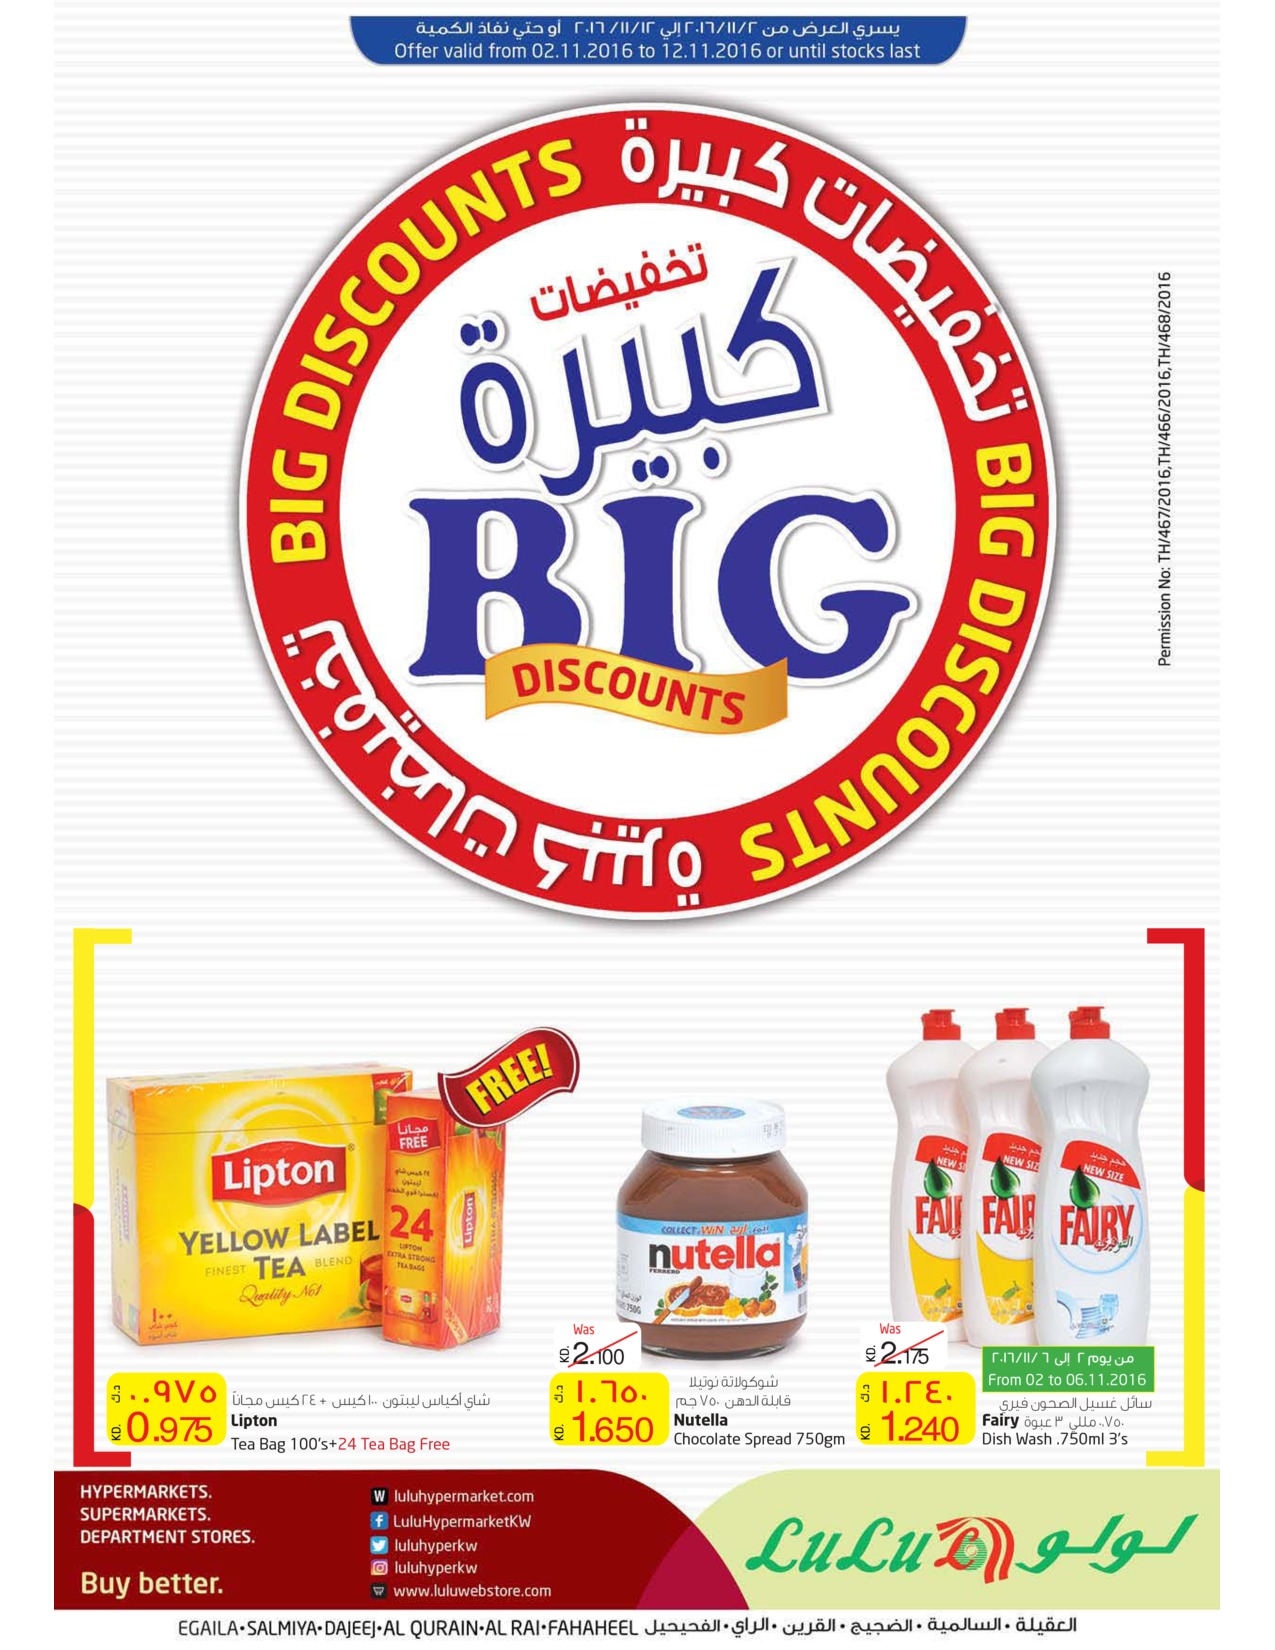 big-discounts-kuwait